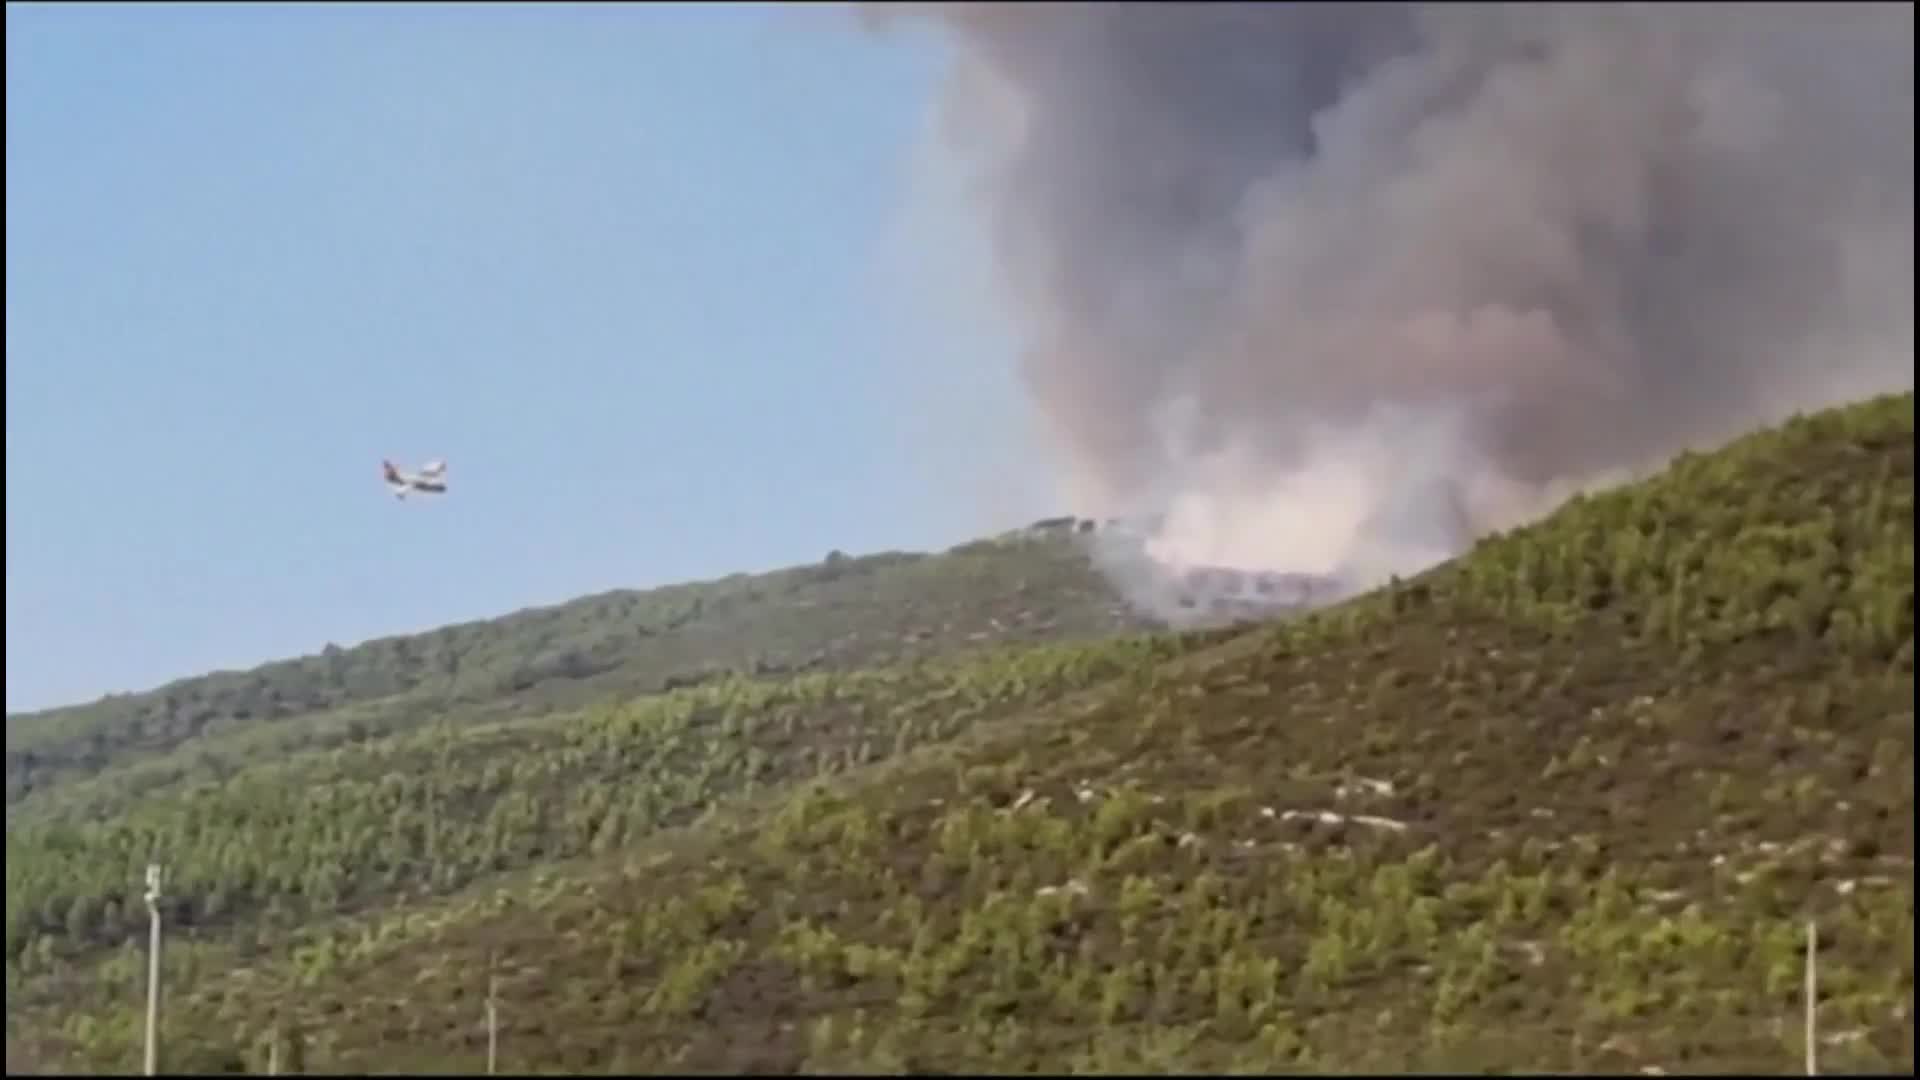 Мощен пожар в популярен туристически регион в Турция